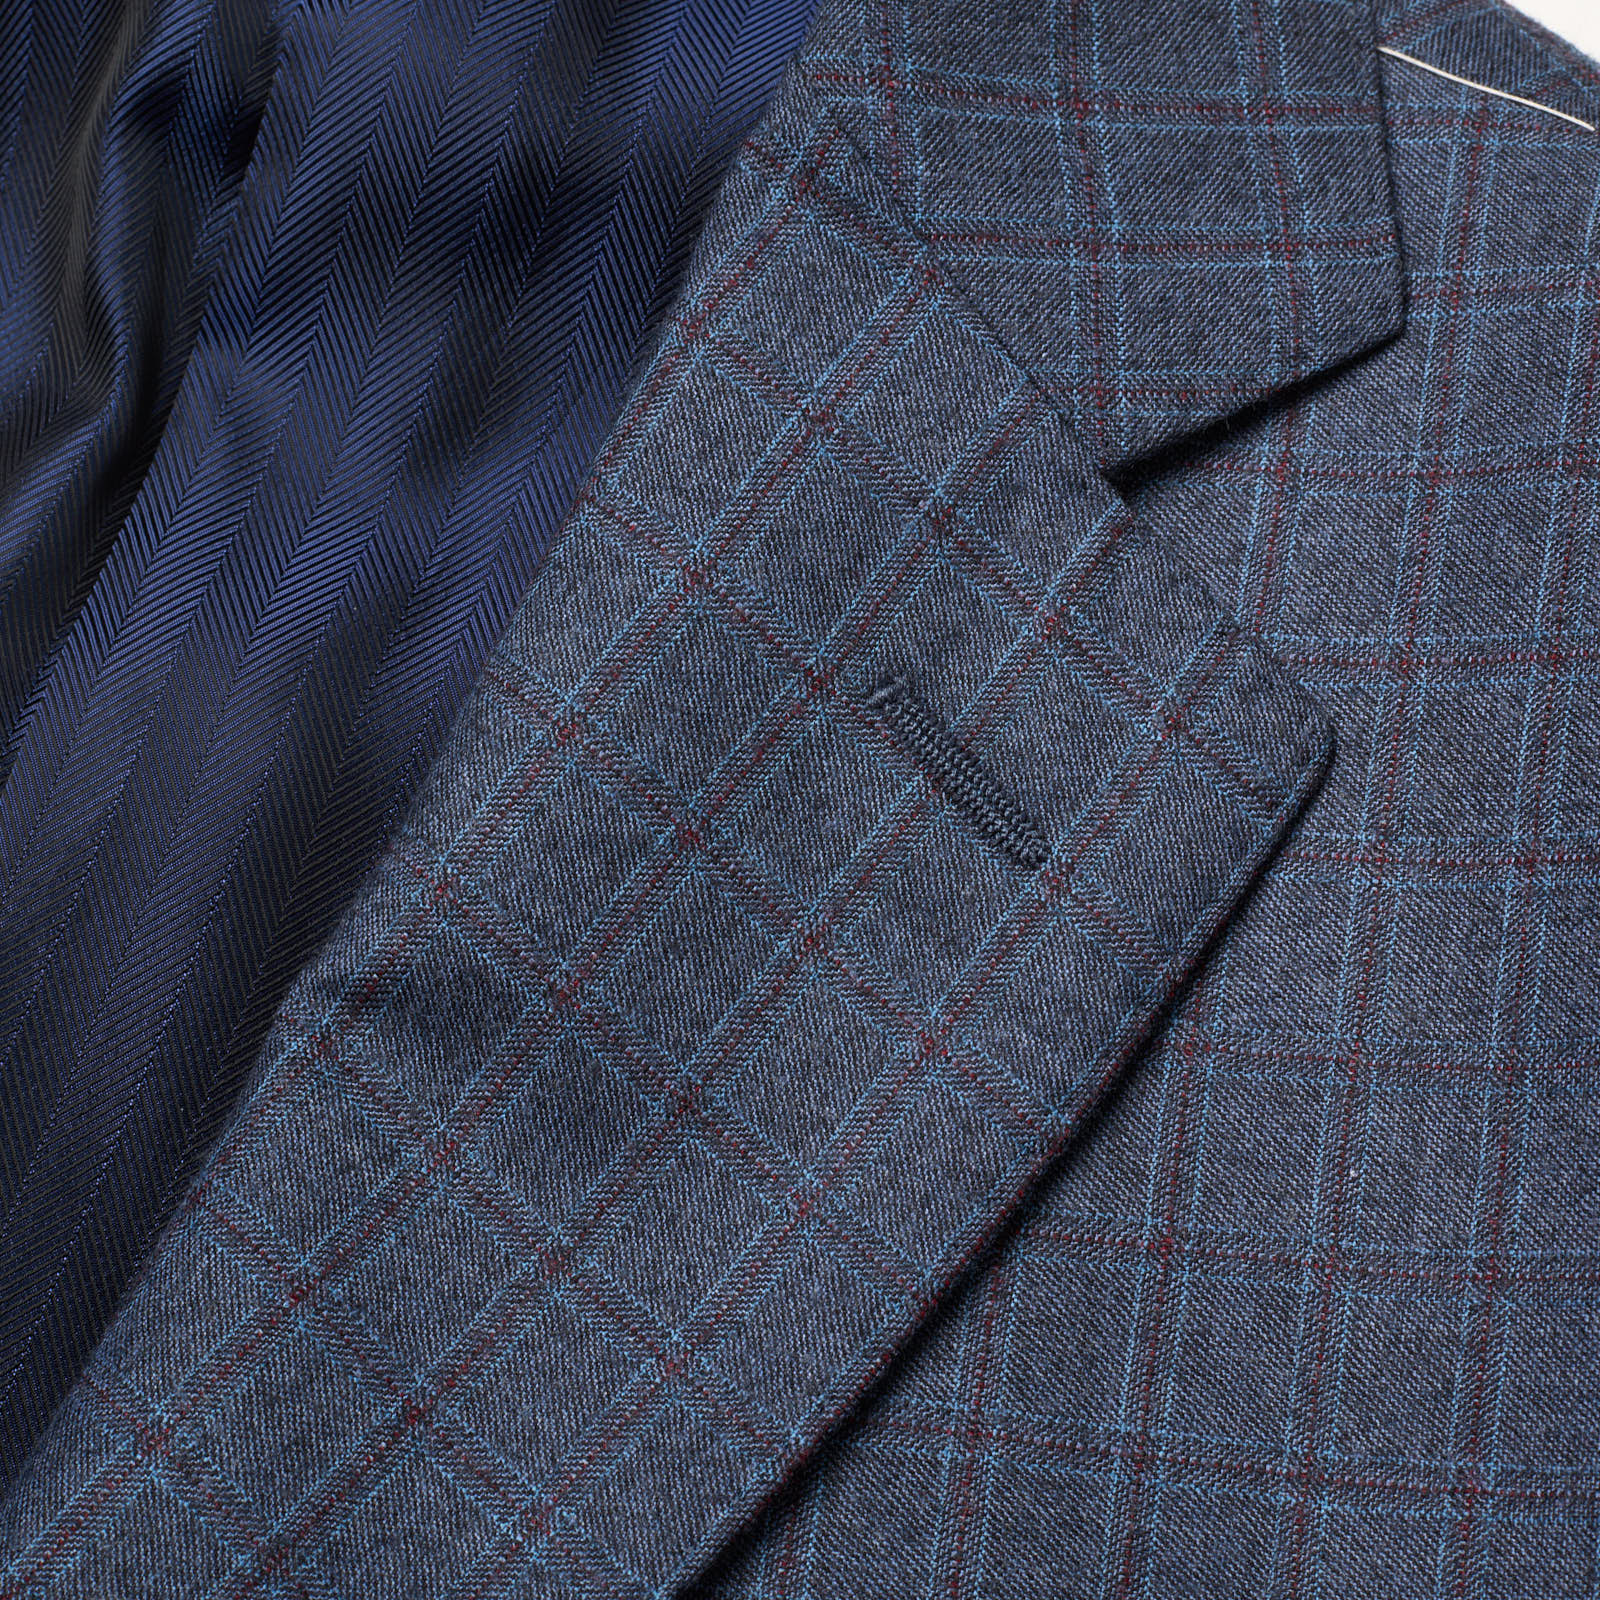 VANNUCCI Milano Blue Plaid Wool-Cashmere Slim Suit EU 54 NEW US 42